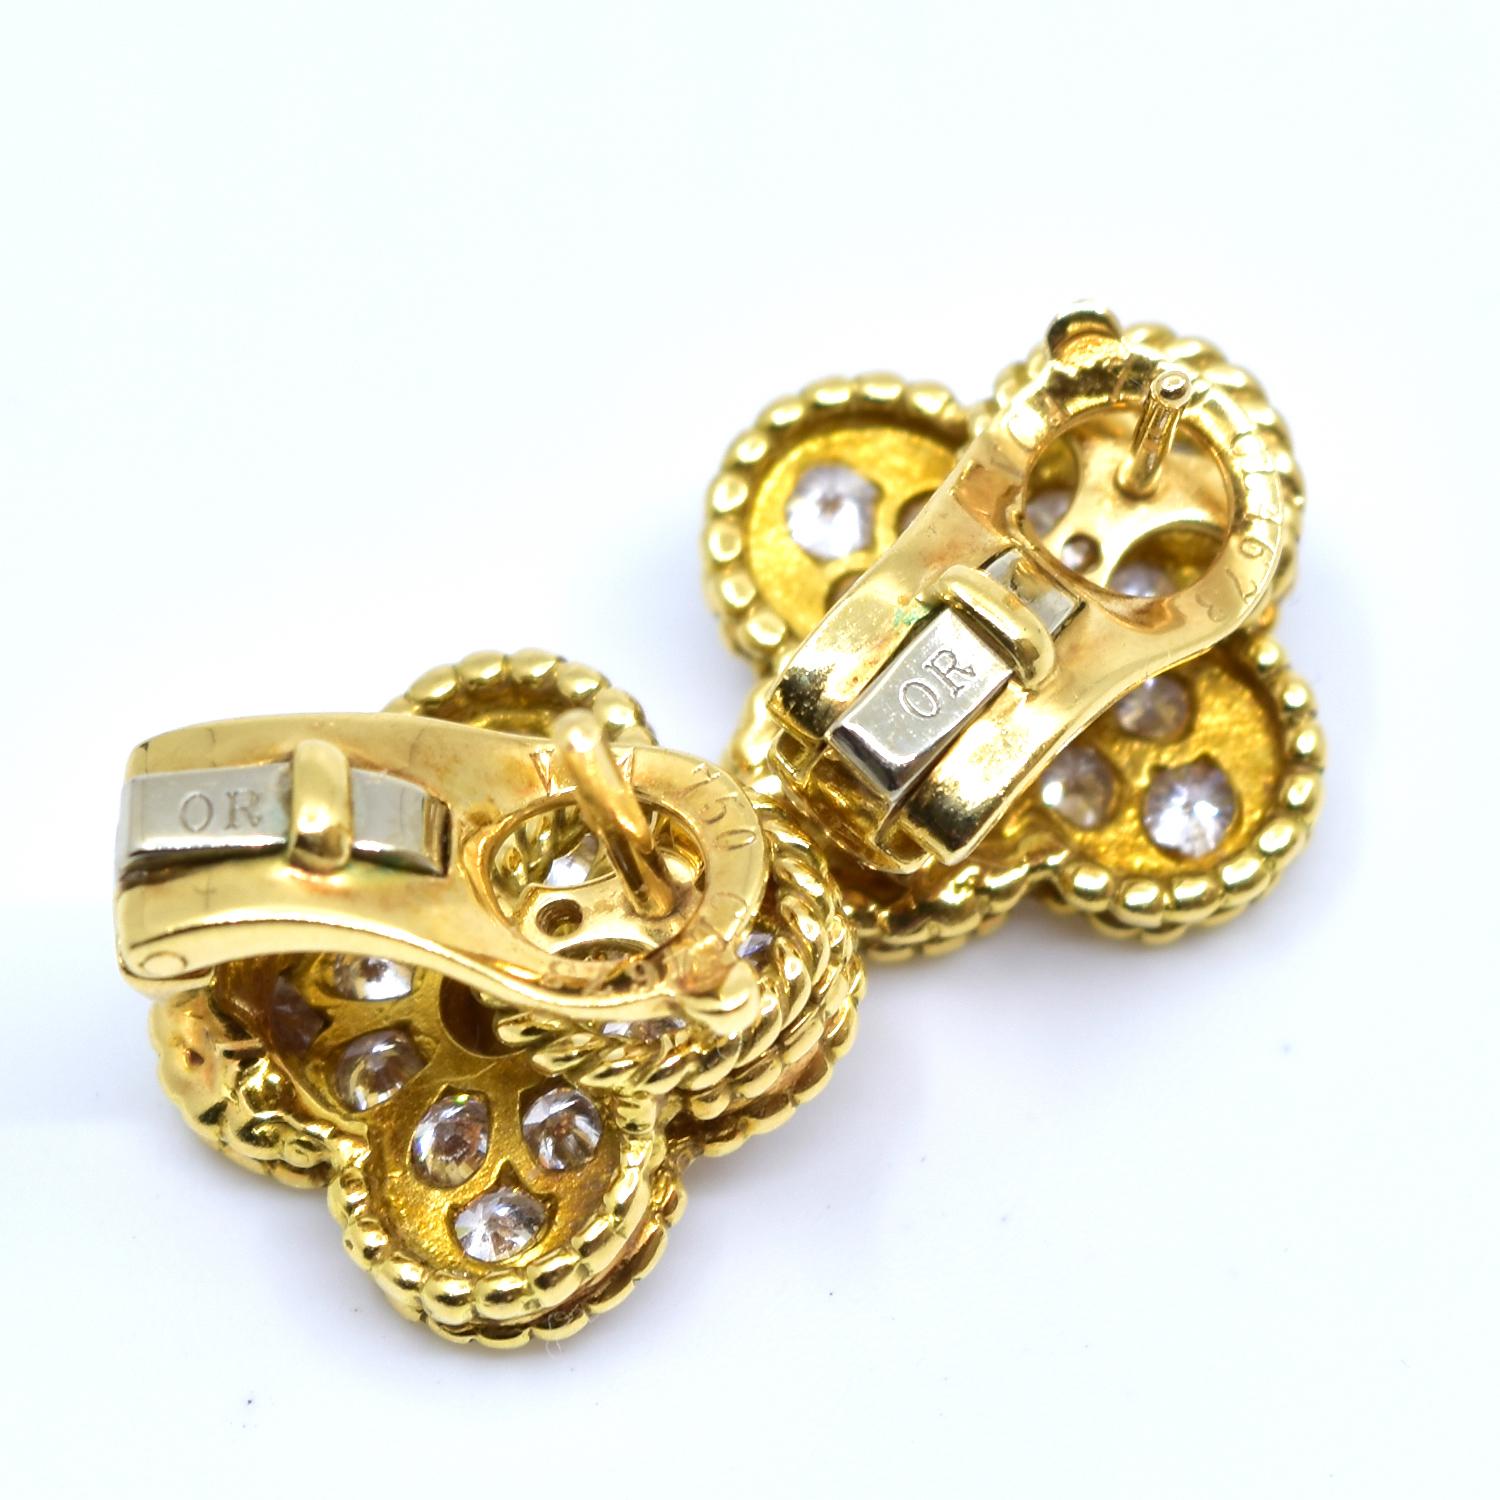 Brilliant Cut Van Cleef & Arpels Vintage Alhambra Diamond Stud Earrings in Yellow Gold